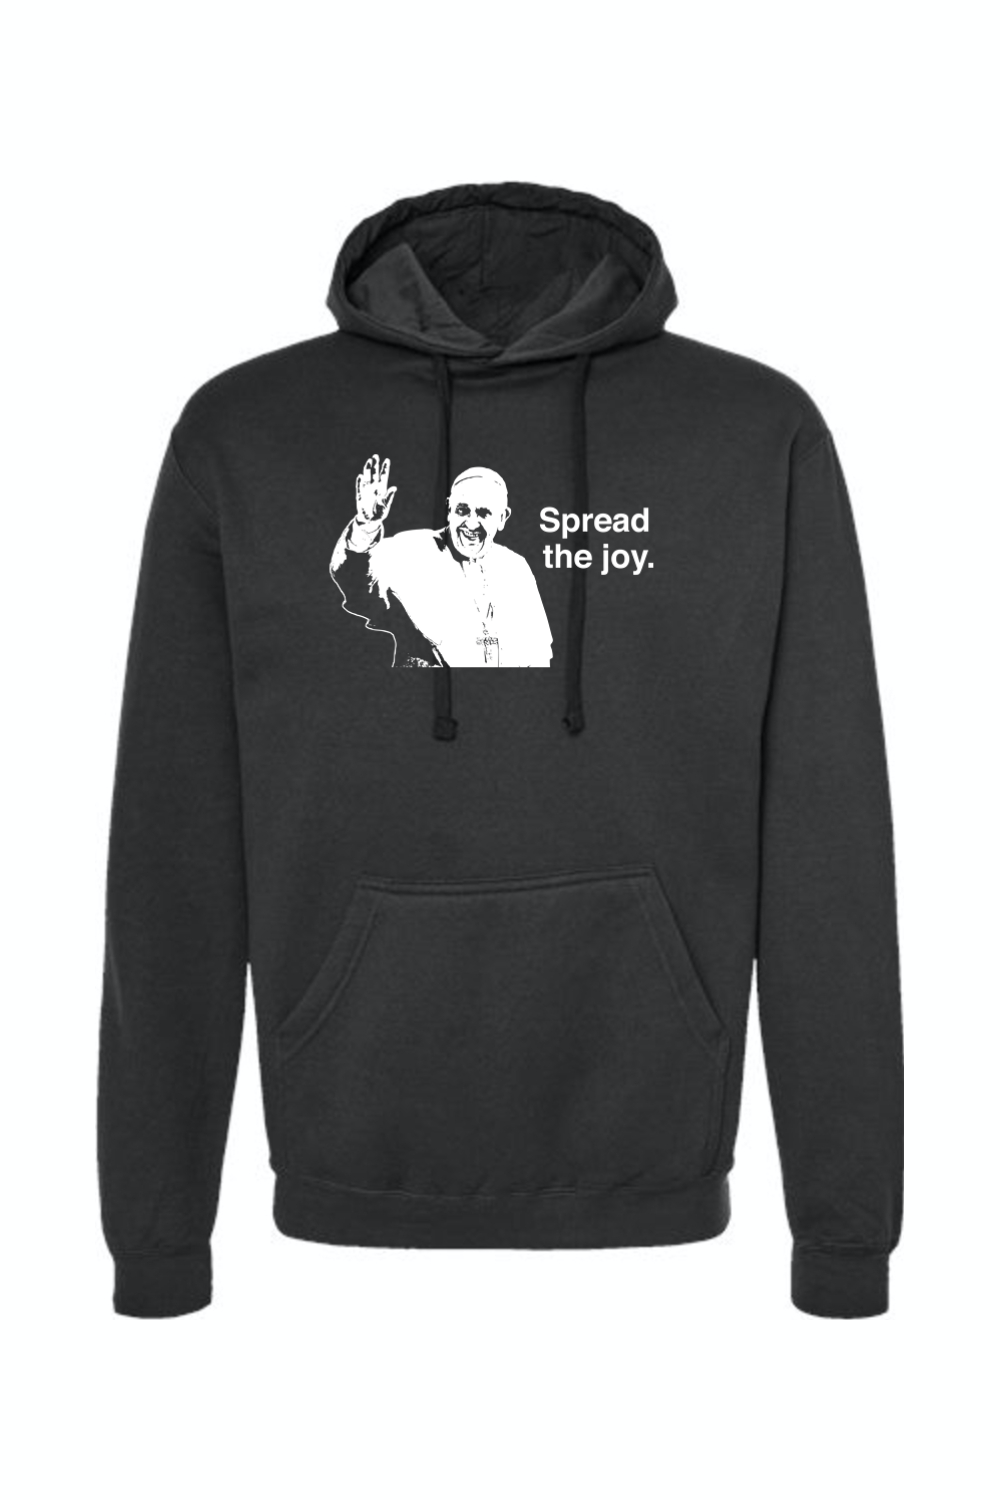 Spread the Joy - Pope Francis Hoodie Sweatshirt